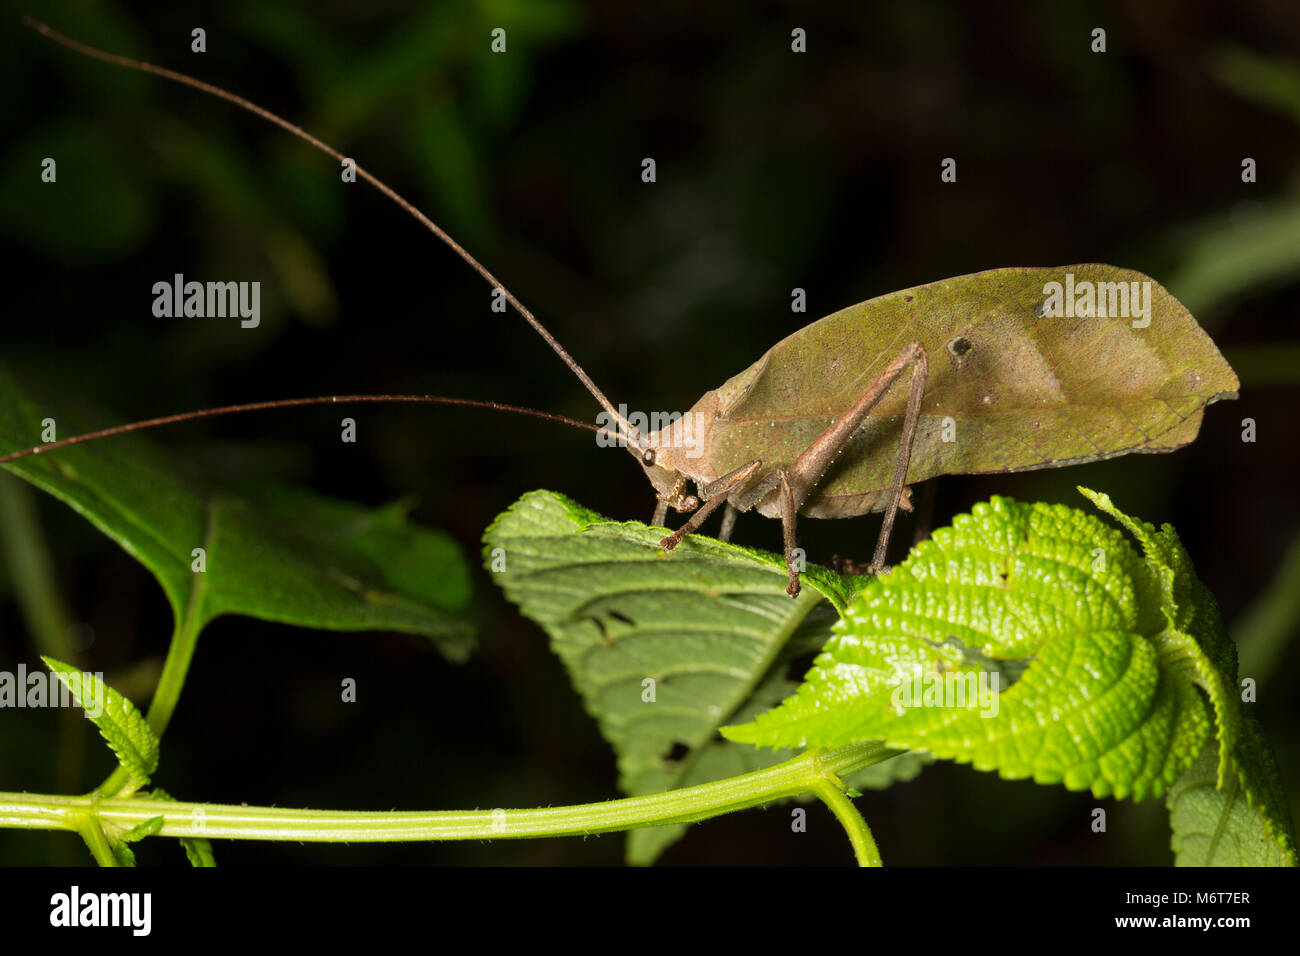 Bush Cricket oder katydid, Bakhuis, fotografiert in der Nacht im Dschungel. Suriname, Südamerika Stockfoto